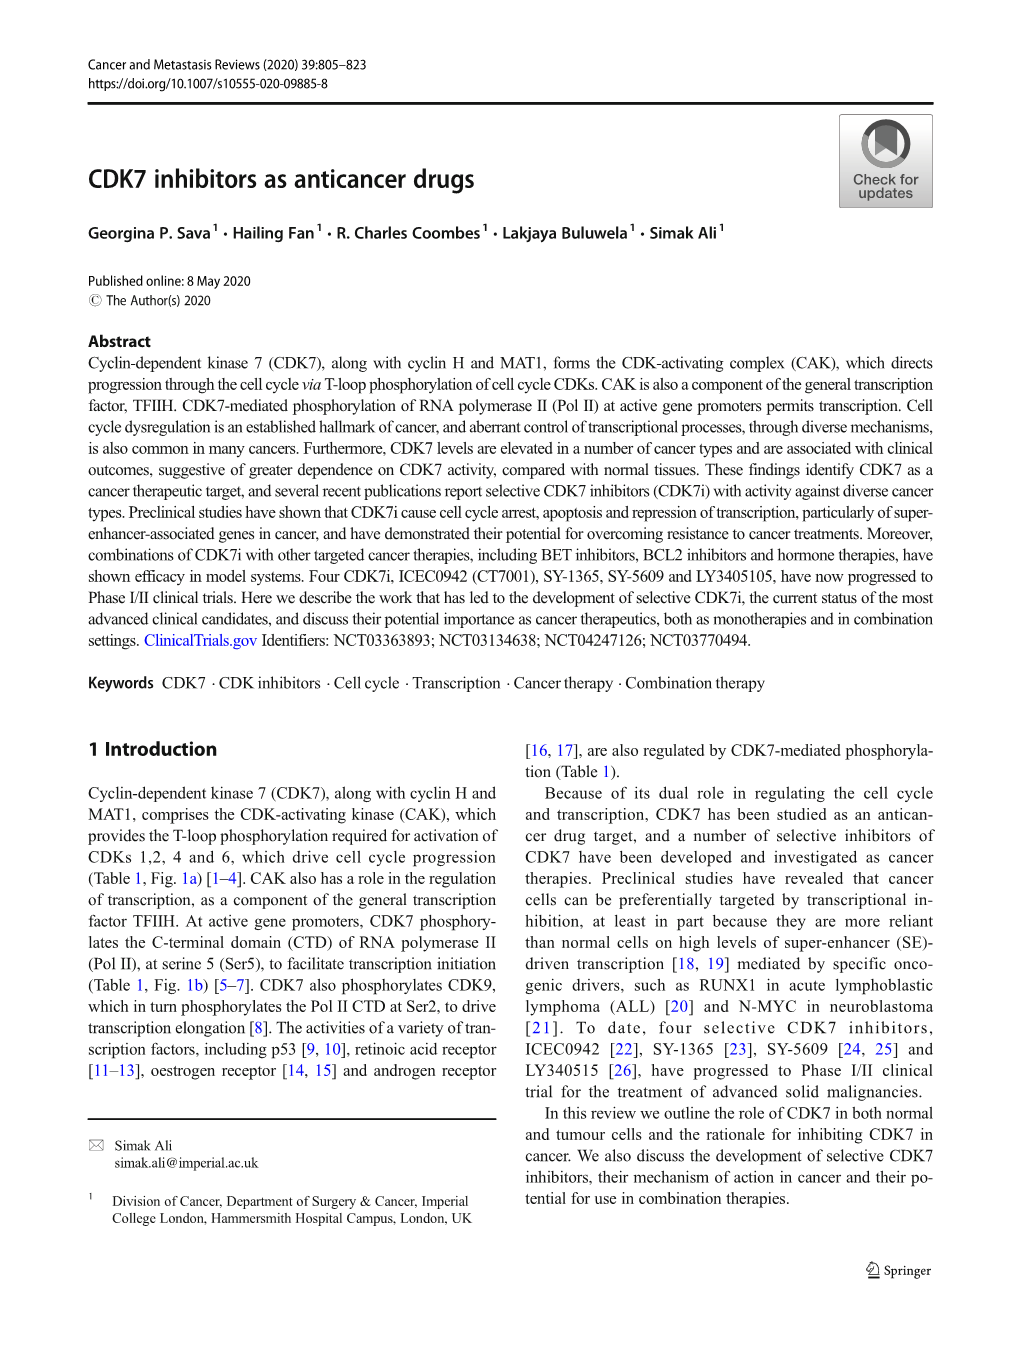 CDK7 Inhibitors As Anticancer Drugs